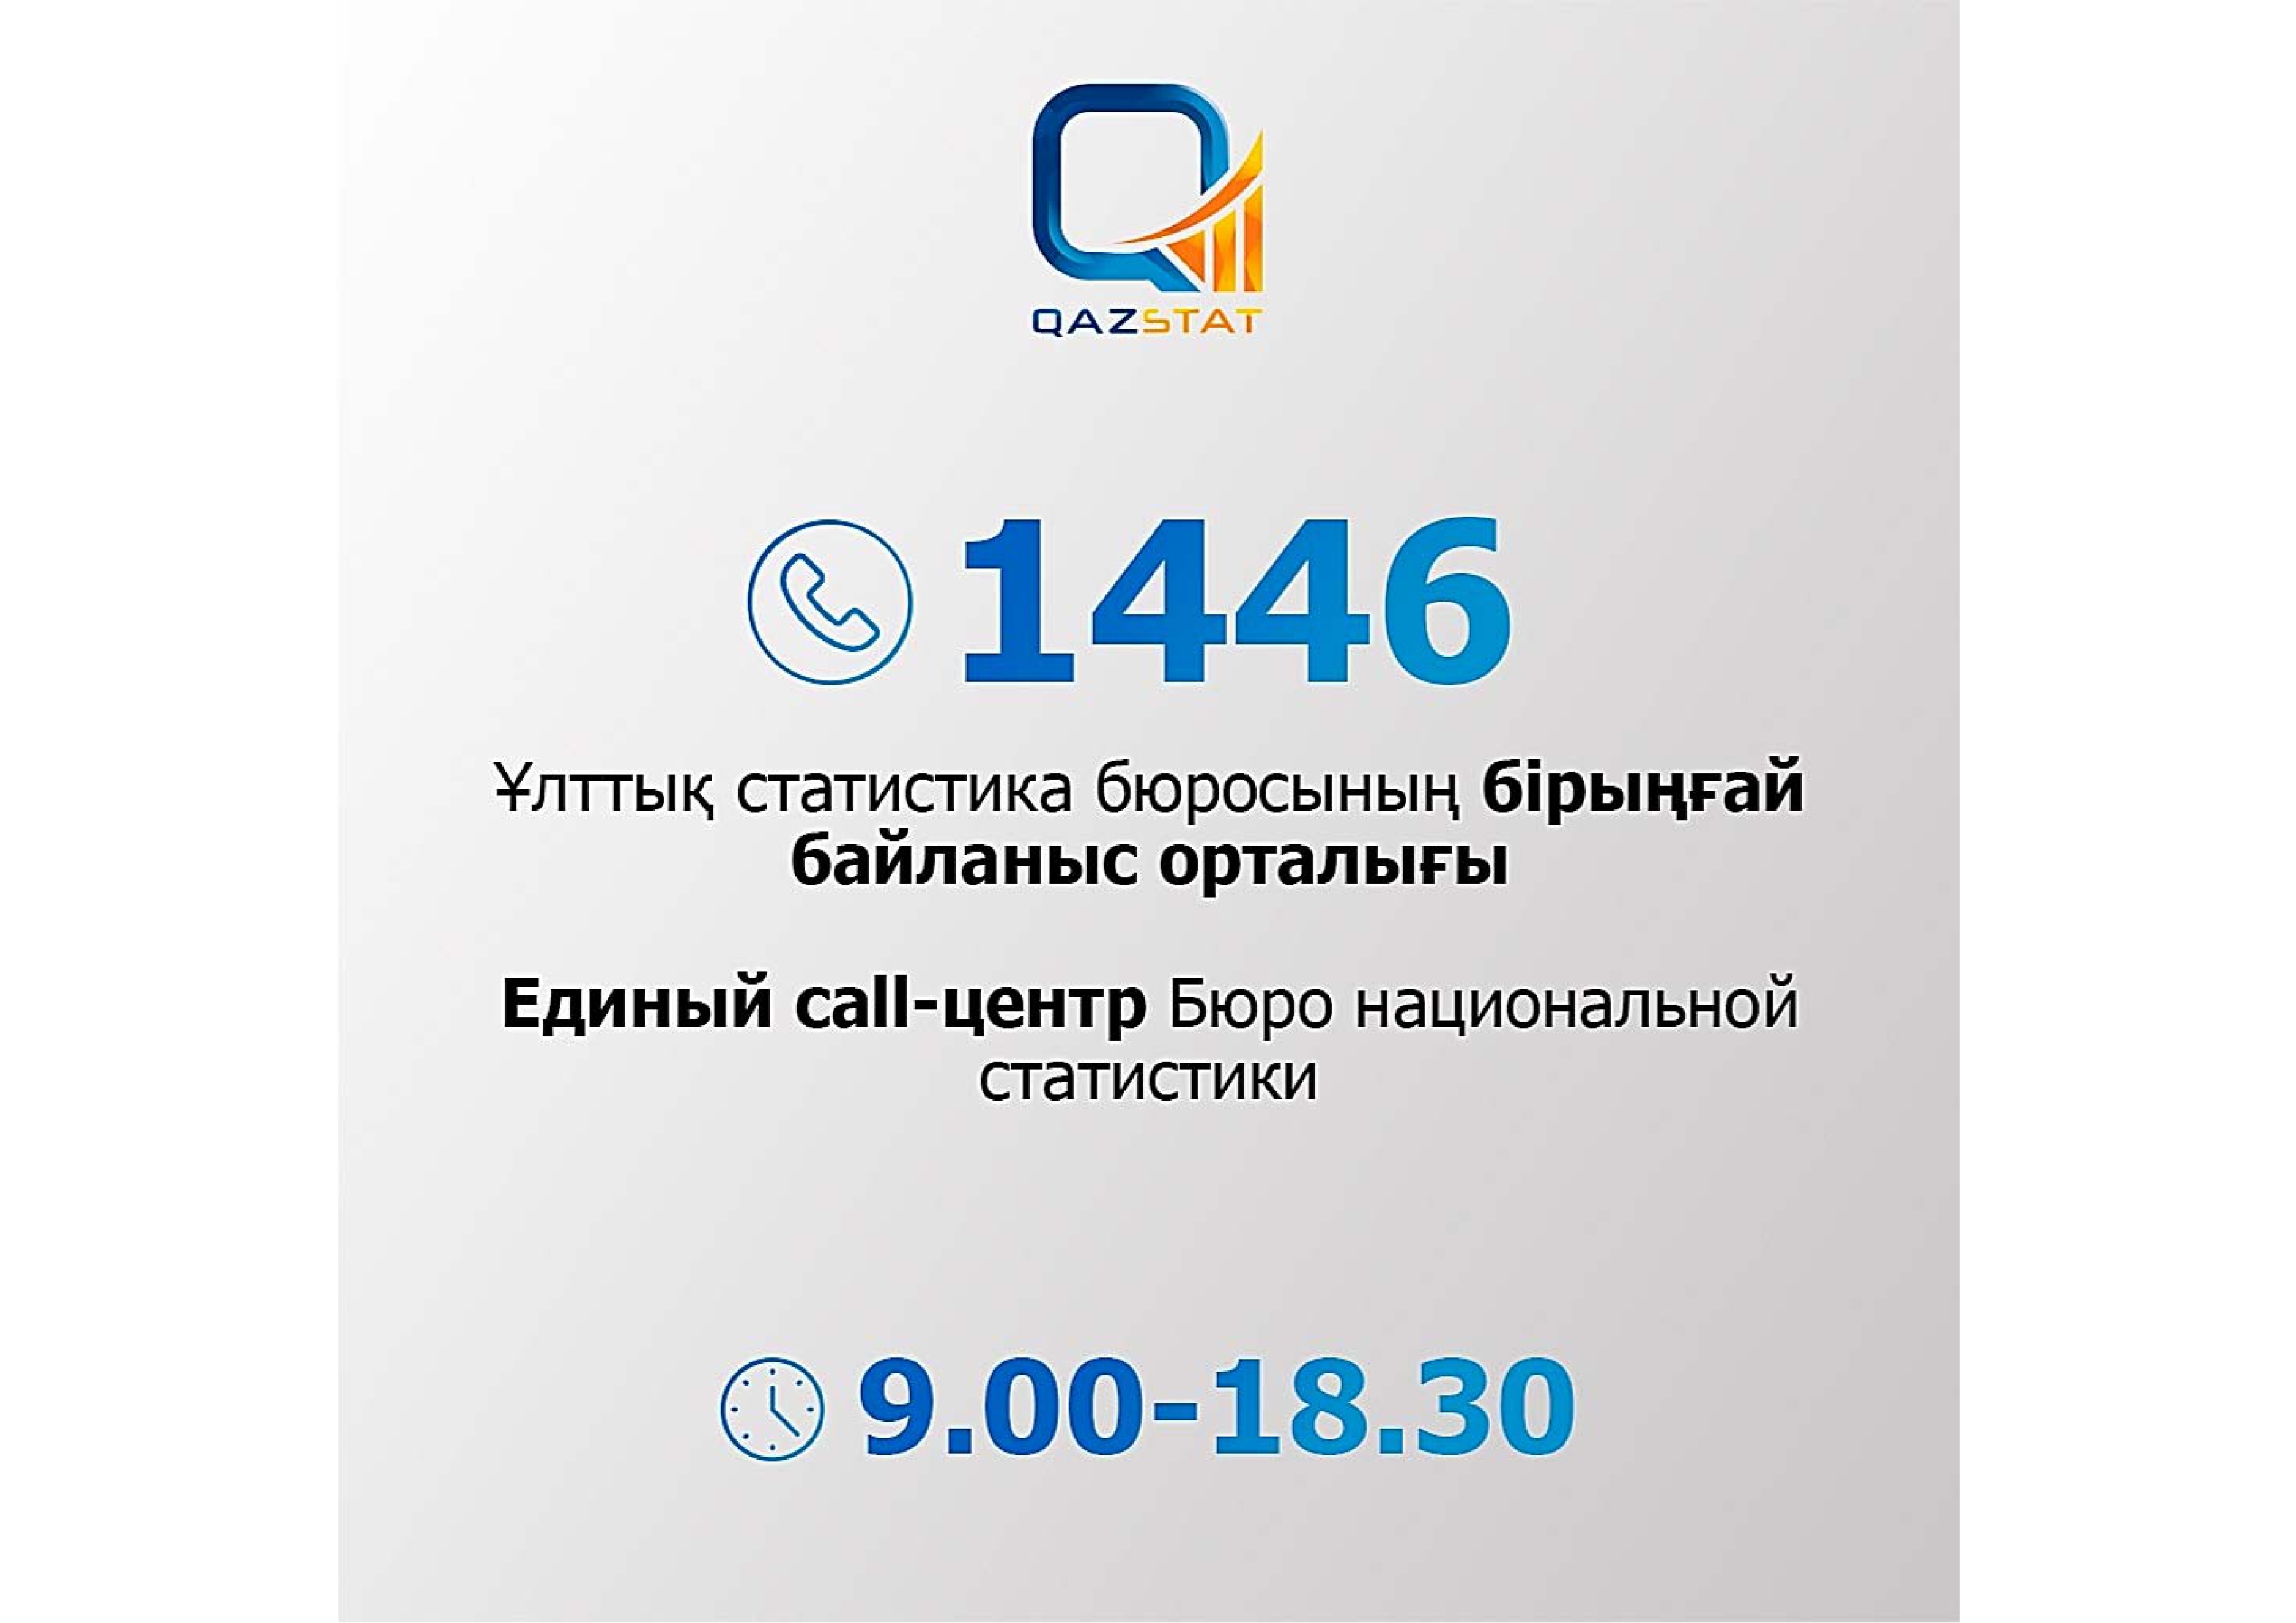 Единый call-центр Бюро национальный статистики